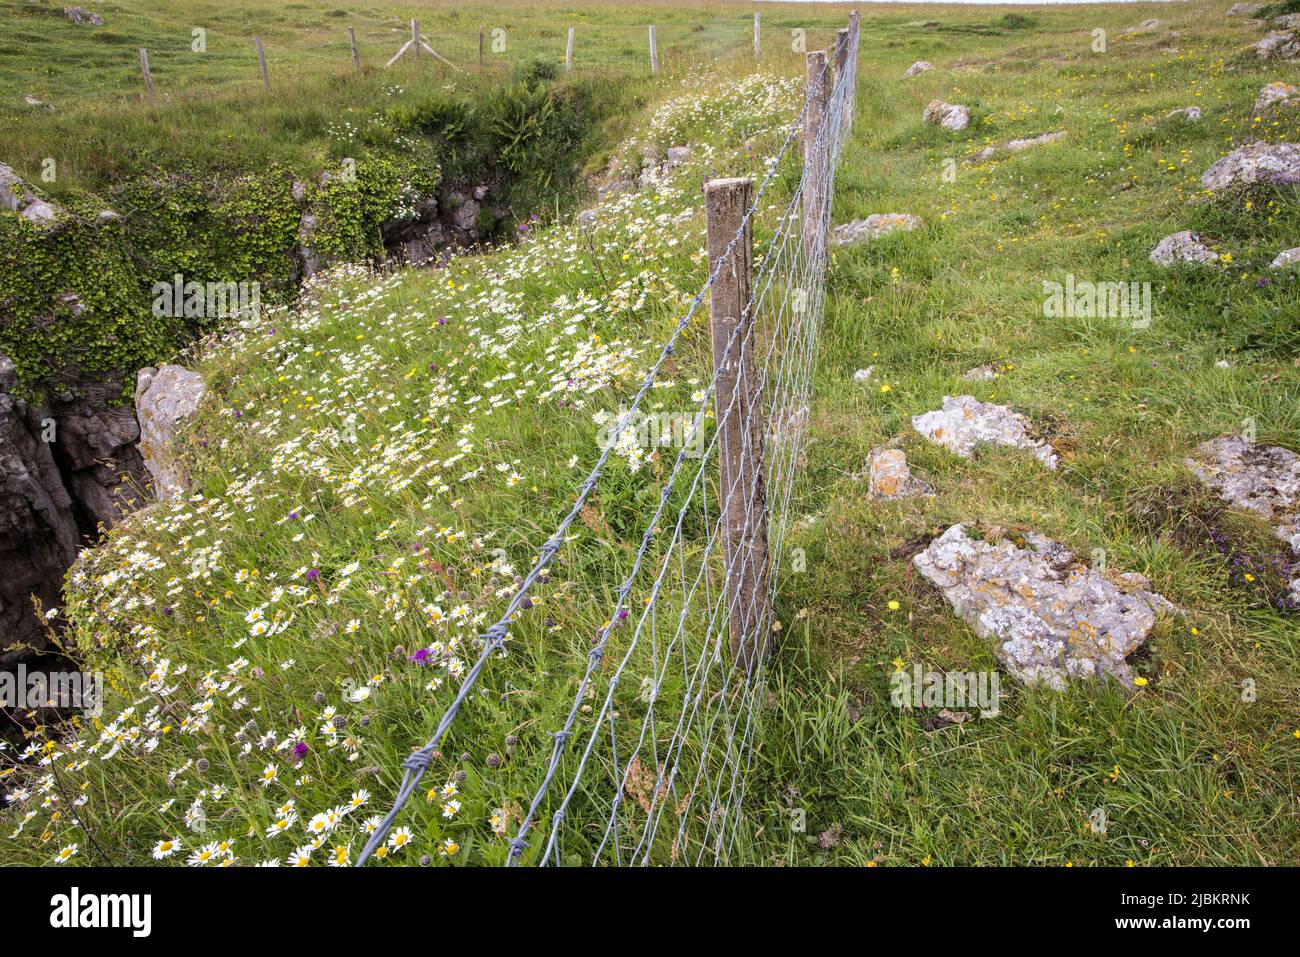 Zaun, der auf dem Pembrokeshire-Küstenpfad in Barafundle Bay, Wales, Großbritannien, weideweideweidees Land und unbeweidete Flächen mit Blumen zeigt Stockfoto